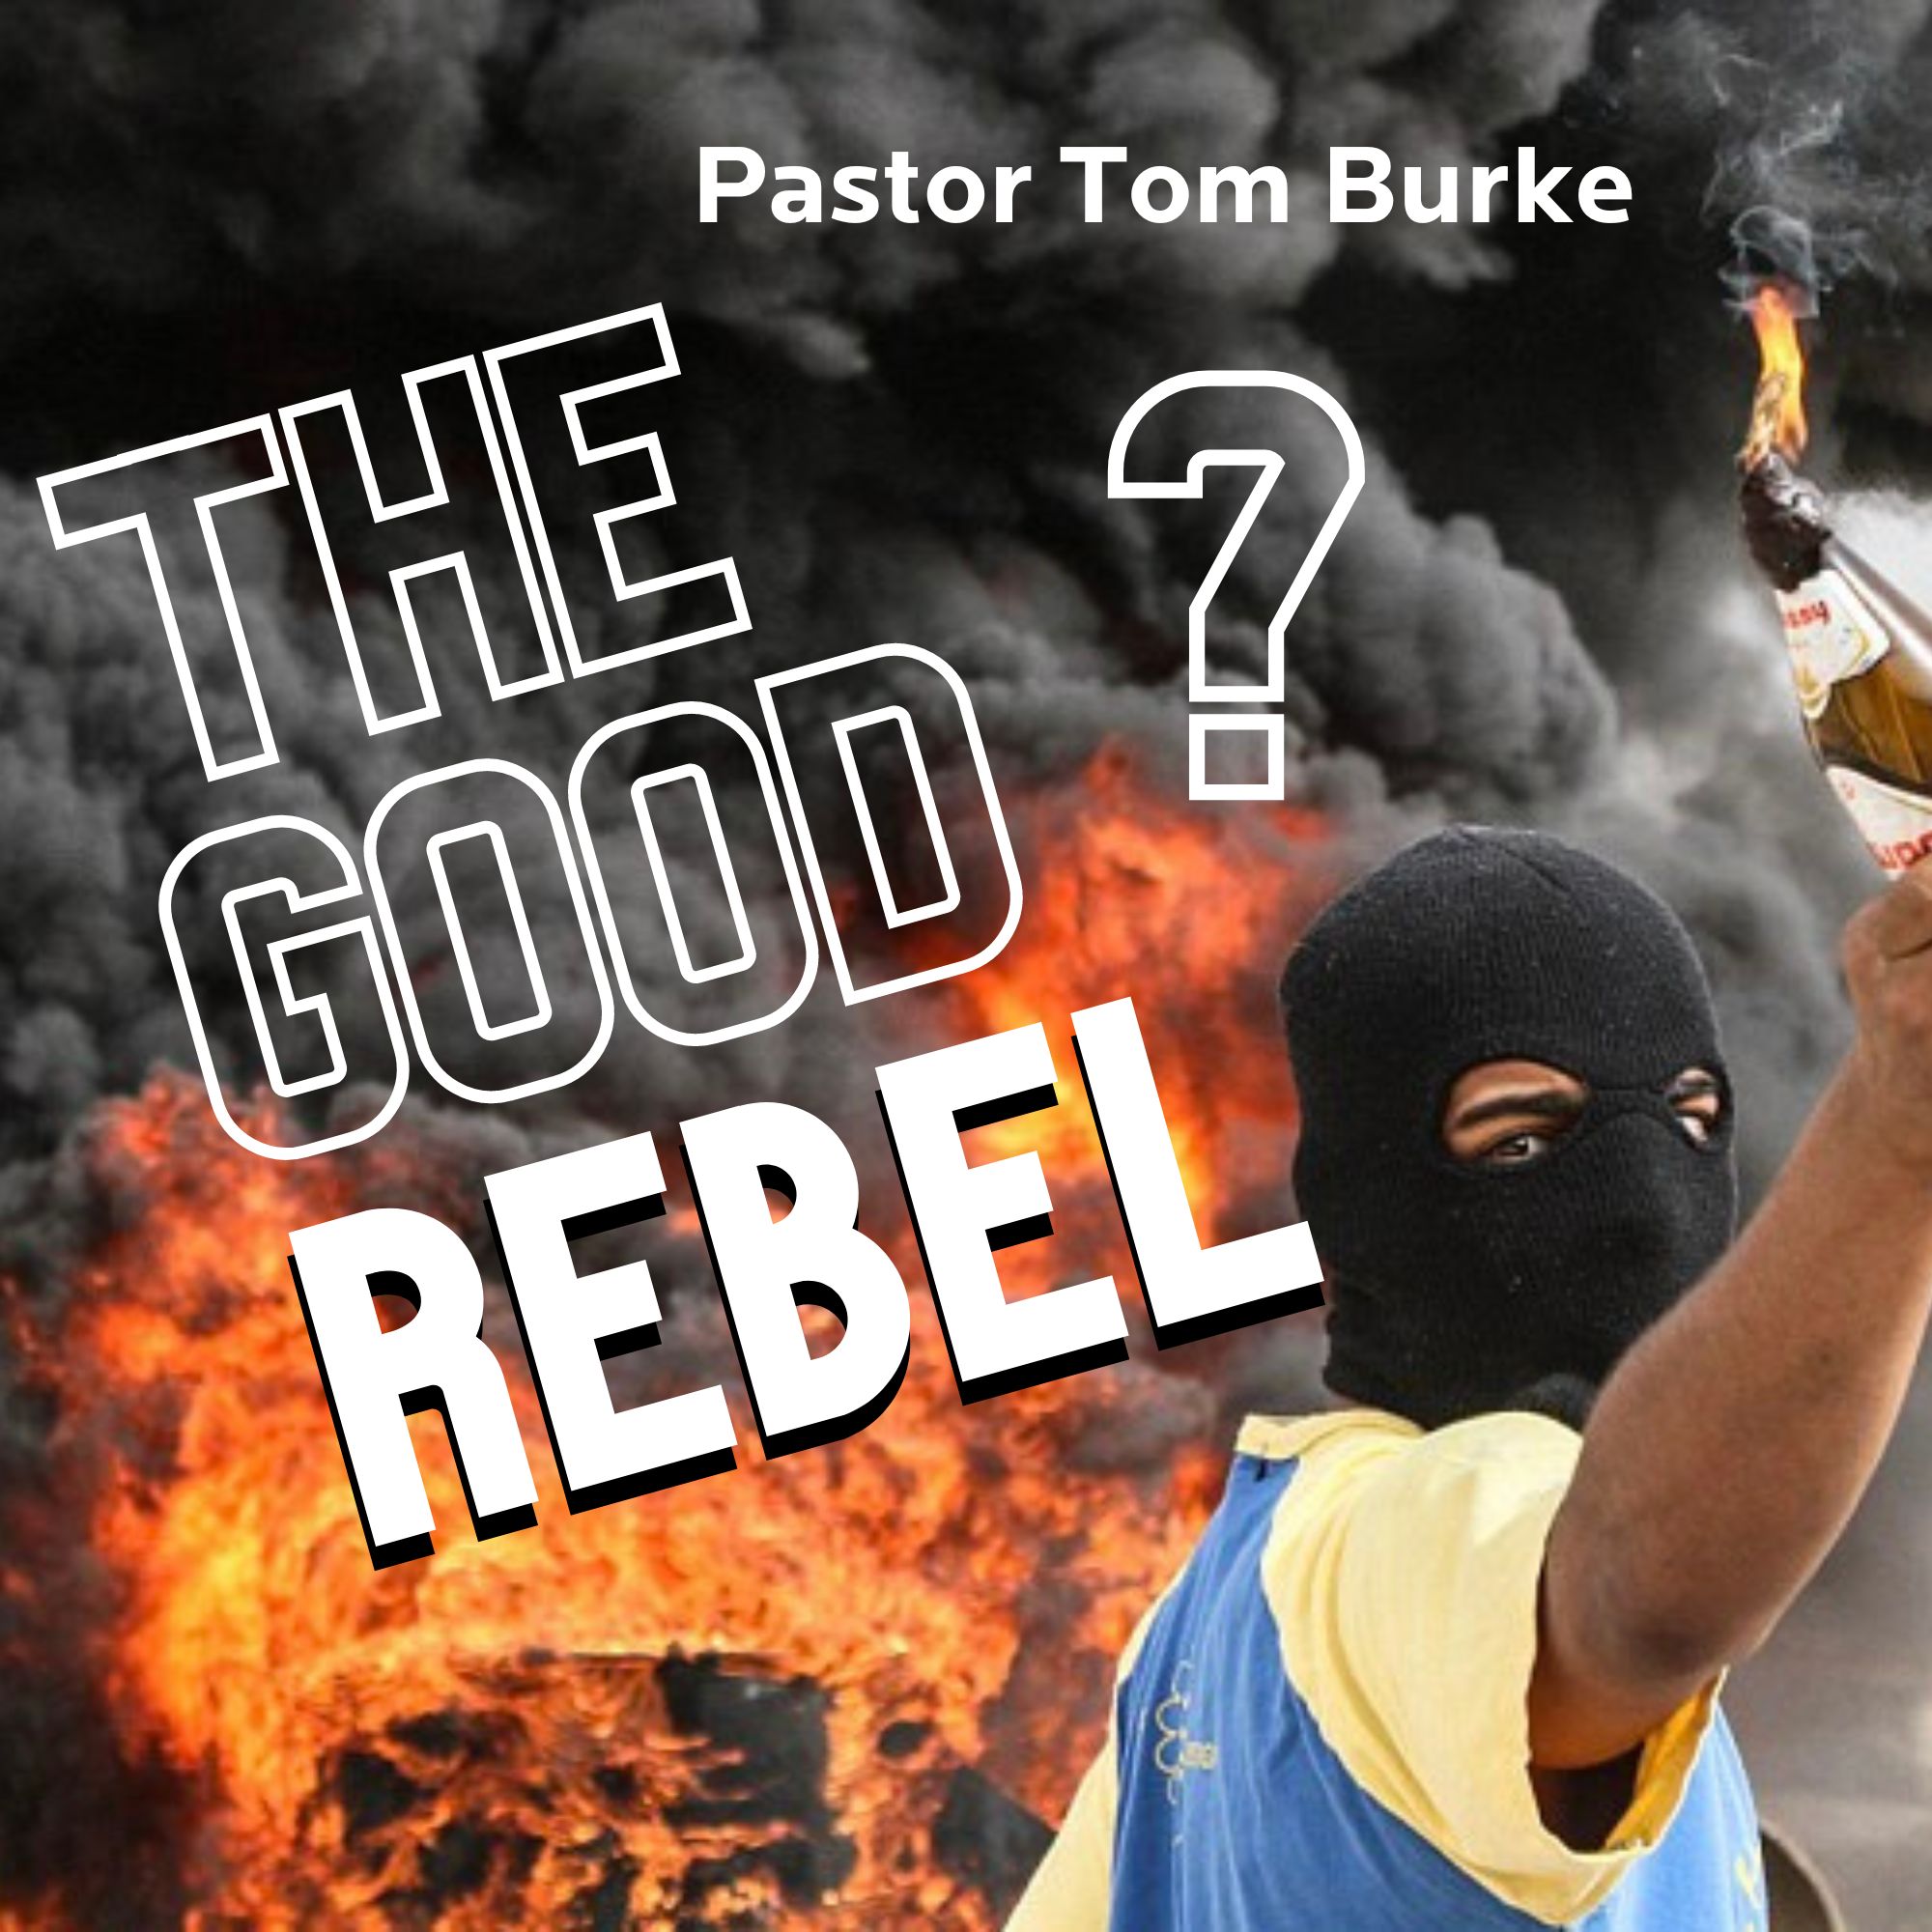 The Good Rebel? - Pastor Tom Burke